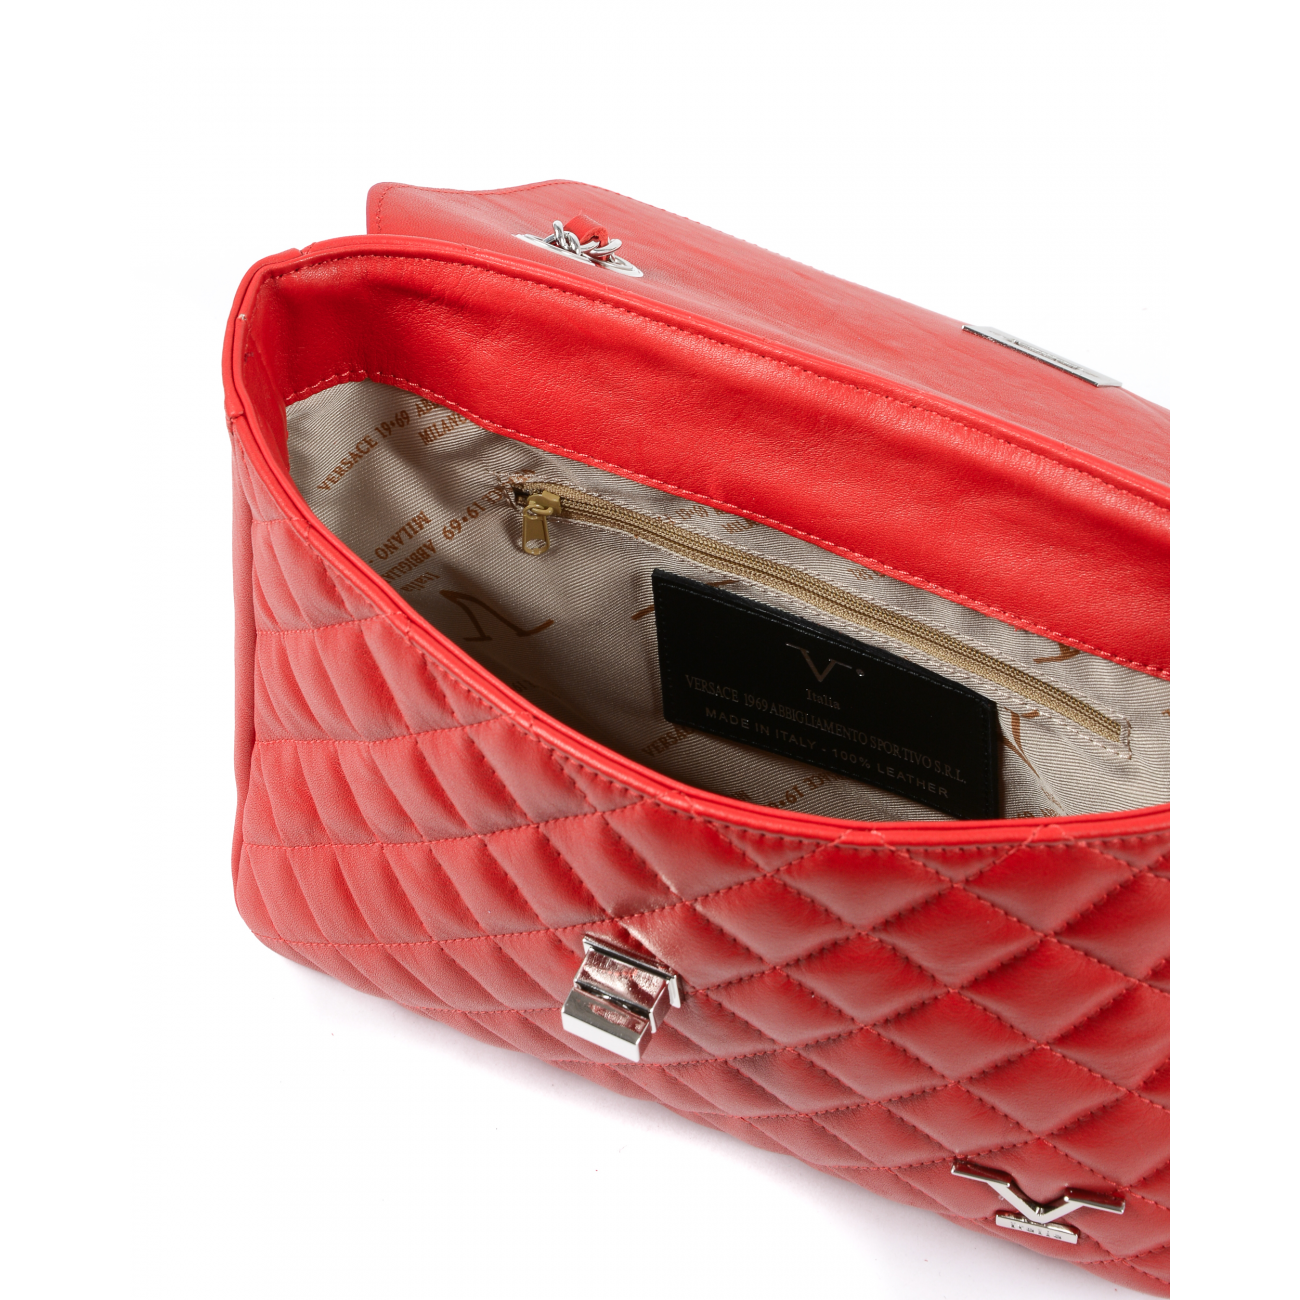 19V69 Italia Womens Handbag Red V024-S SAUVAGE ROSSO